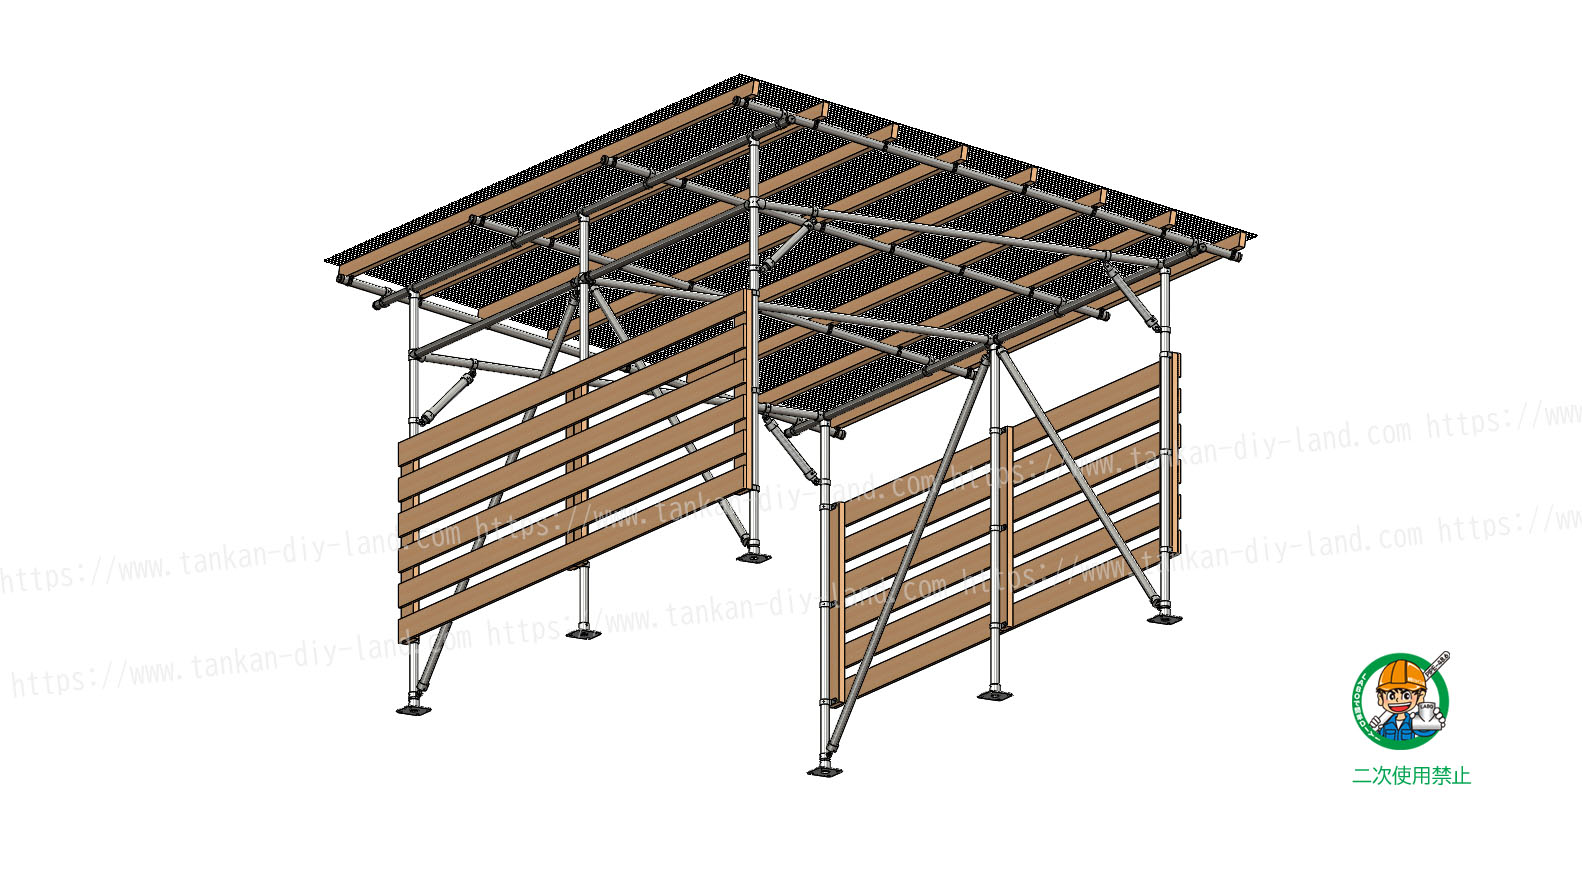 スッキリデザインのｌａｂｏ金具で 簡単 に作る 片流れ屋根の カーポート 小屋 6 単管パイプで作る 単管パイプのdiy向け 技術者向けの情報なら単管diyランド